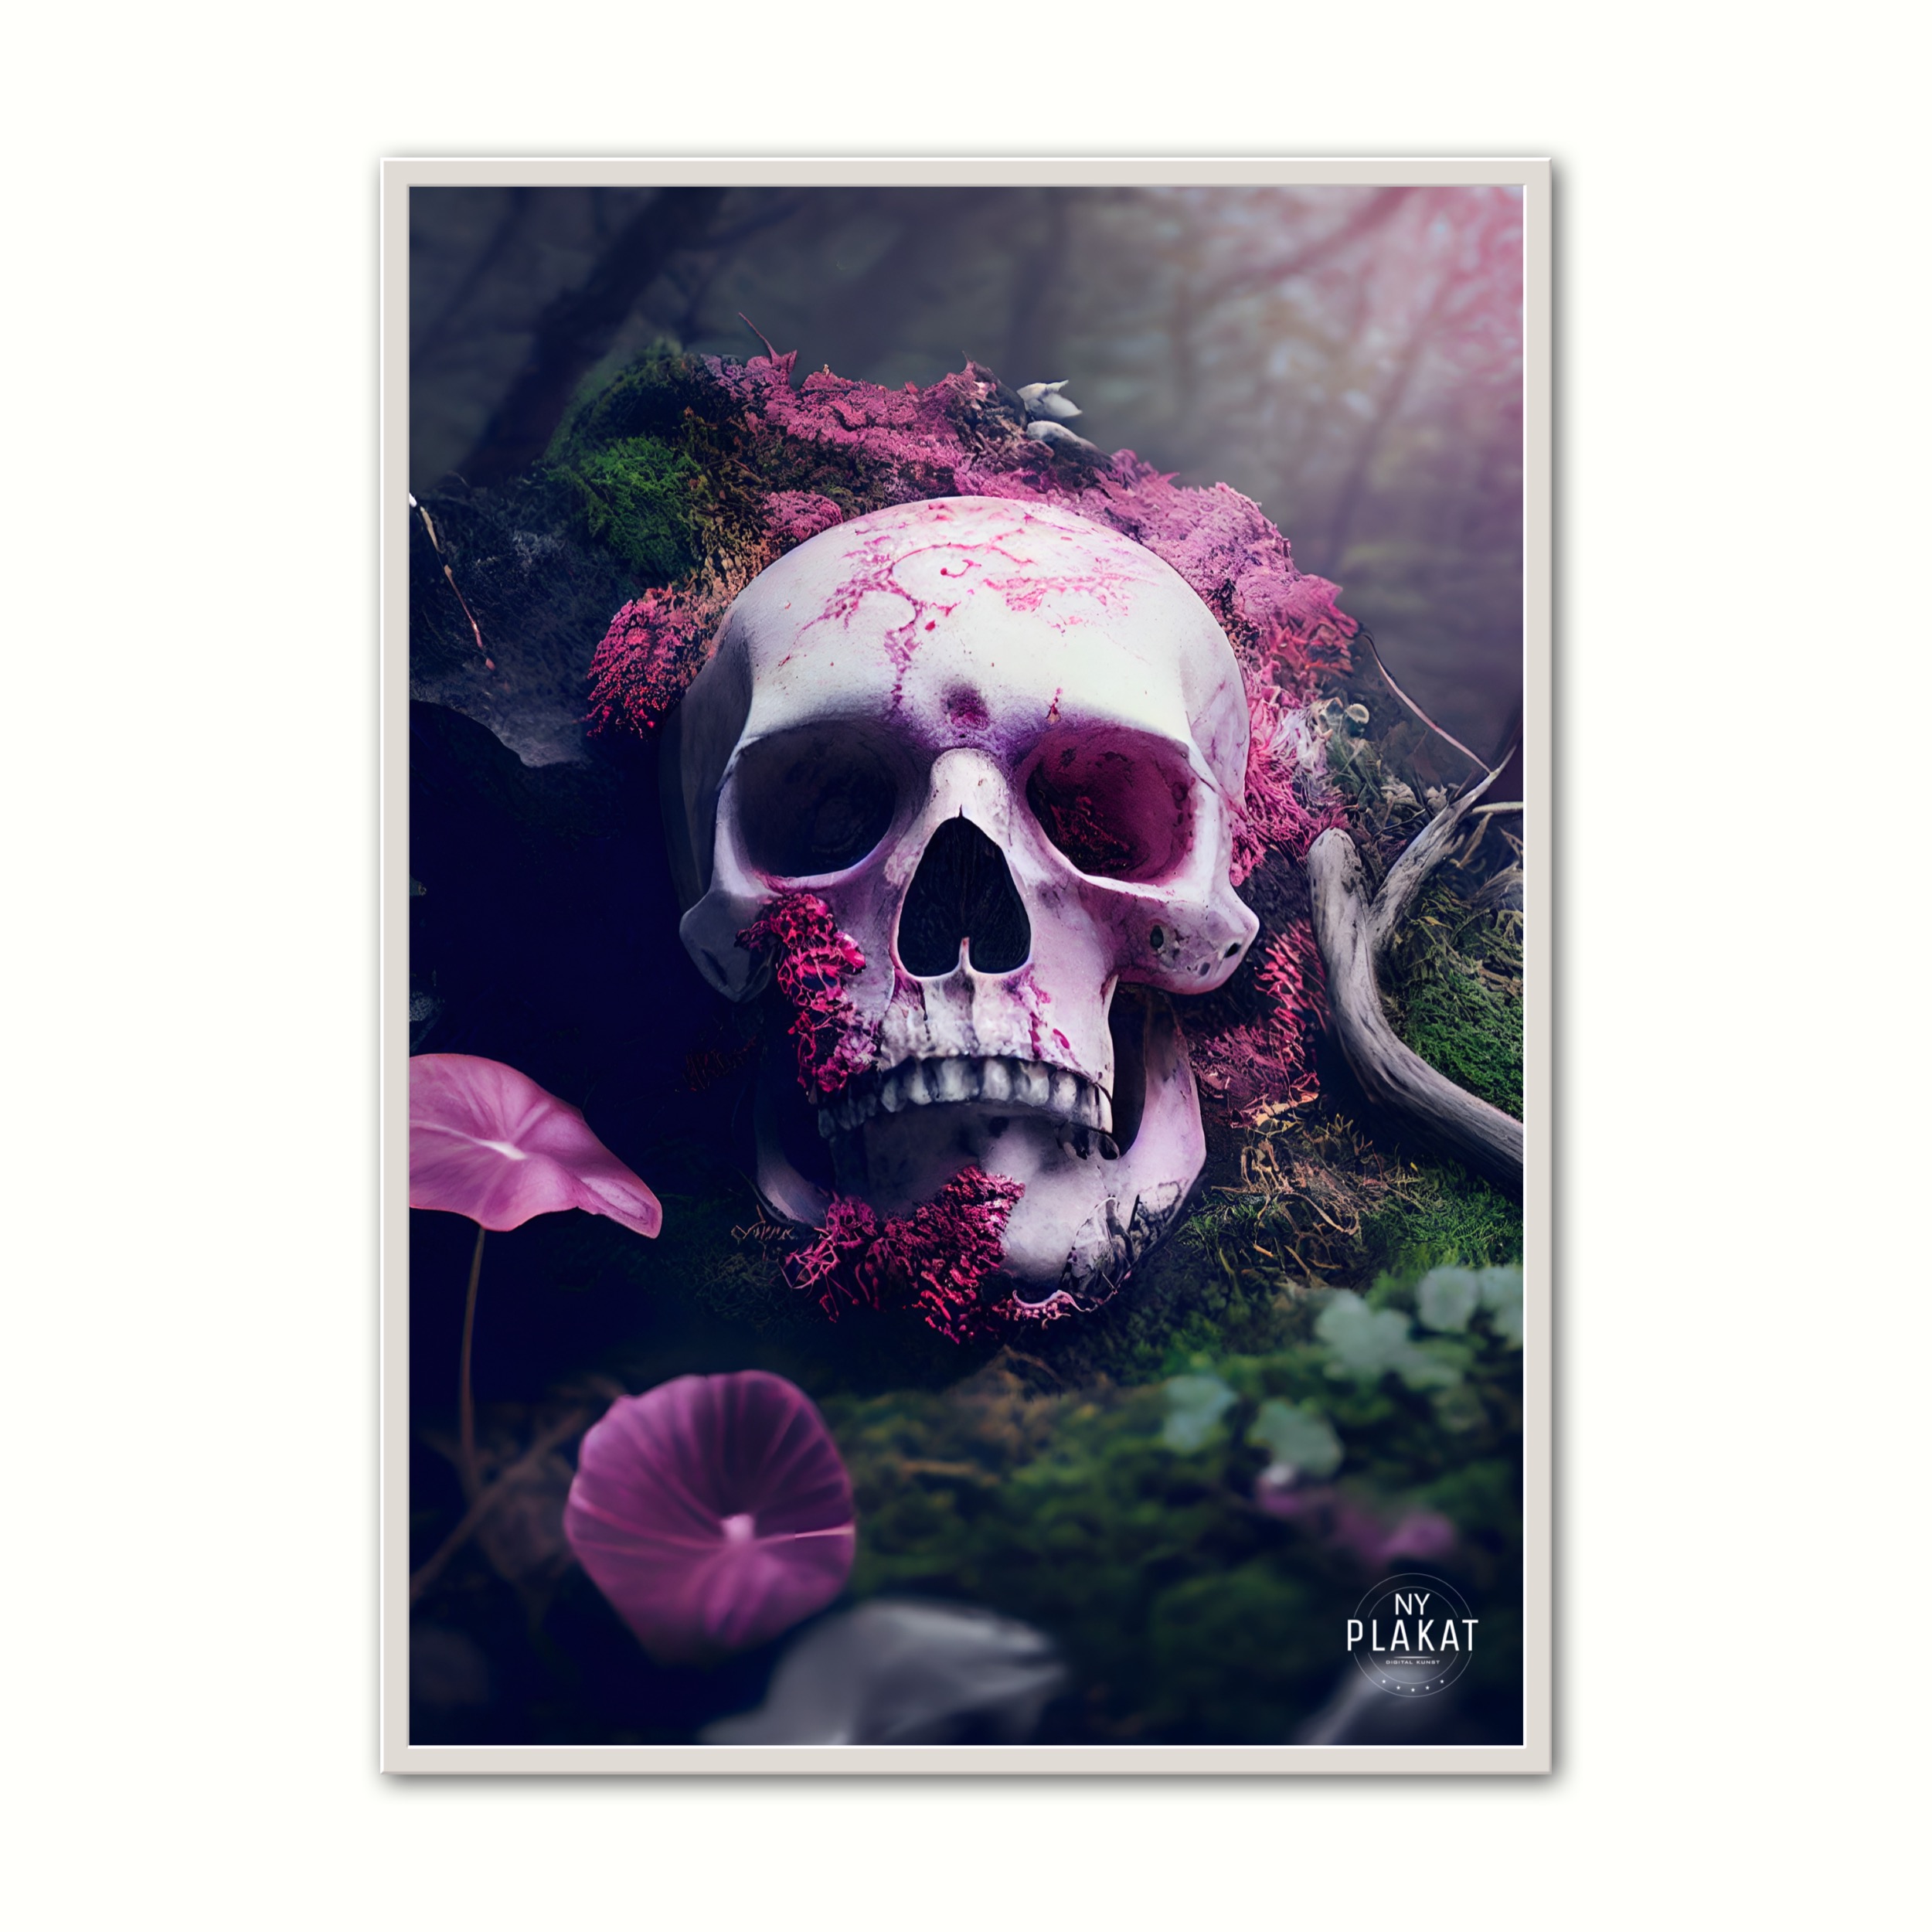 Billede af Plakat med Skull In Forest Poster No. 1 21 x 29,7 cm (A4)